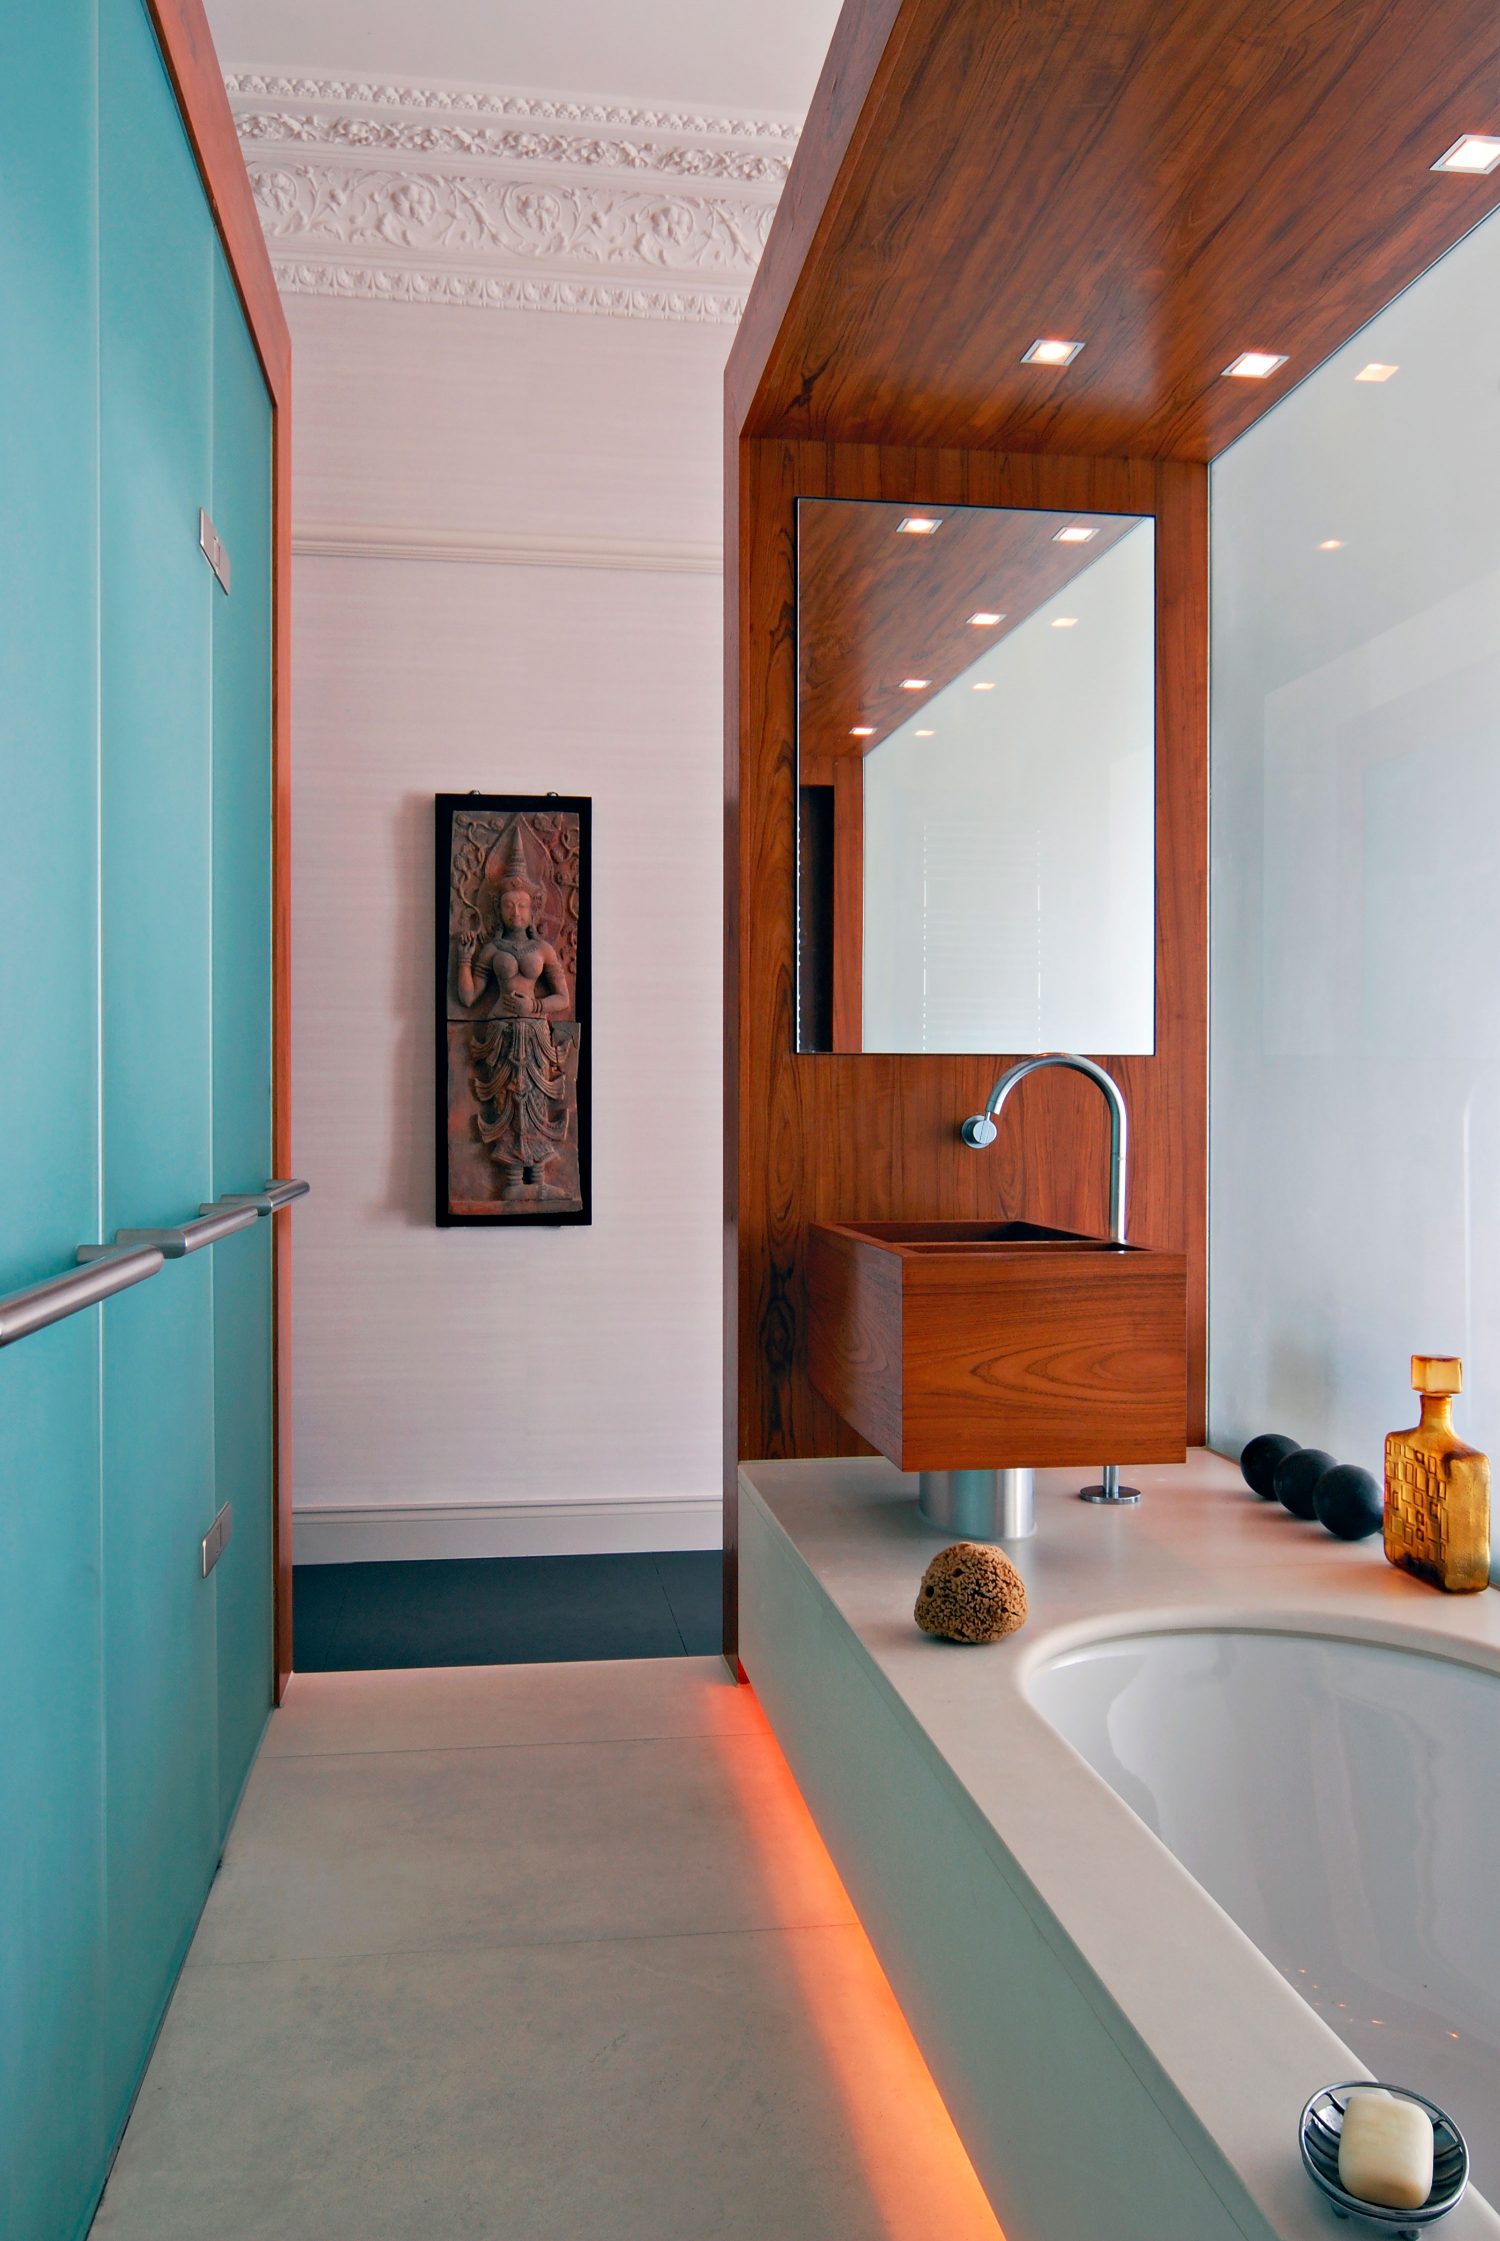 Two Grand Drawing Rooms by Daniel Hopwood - bathroom. London Kensington interior design